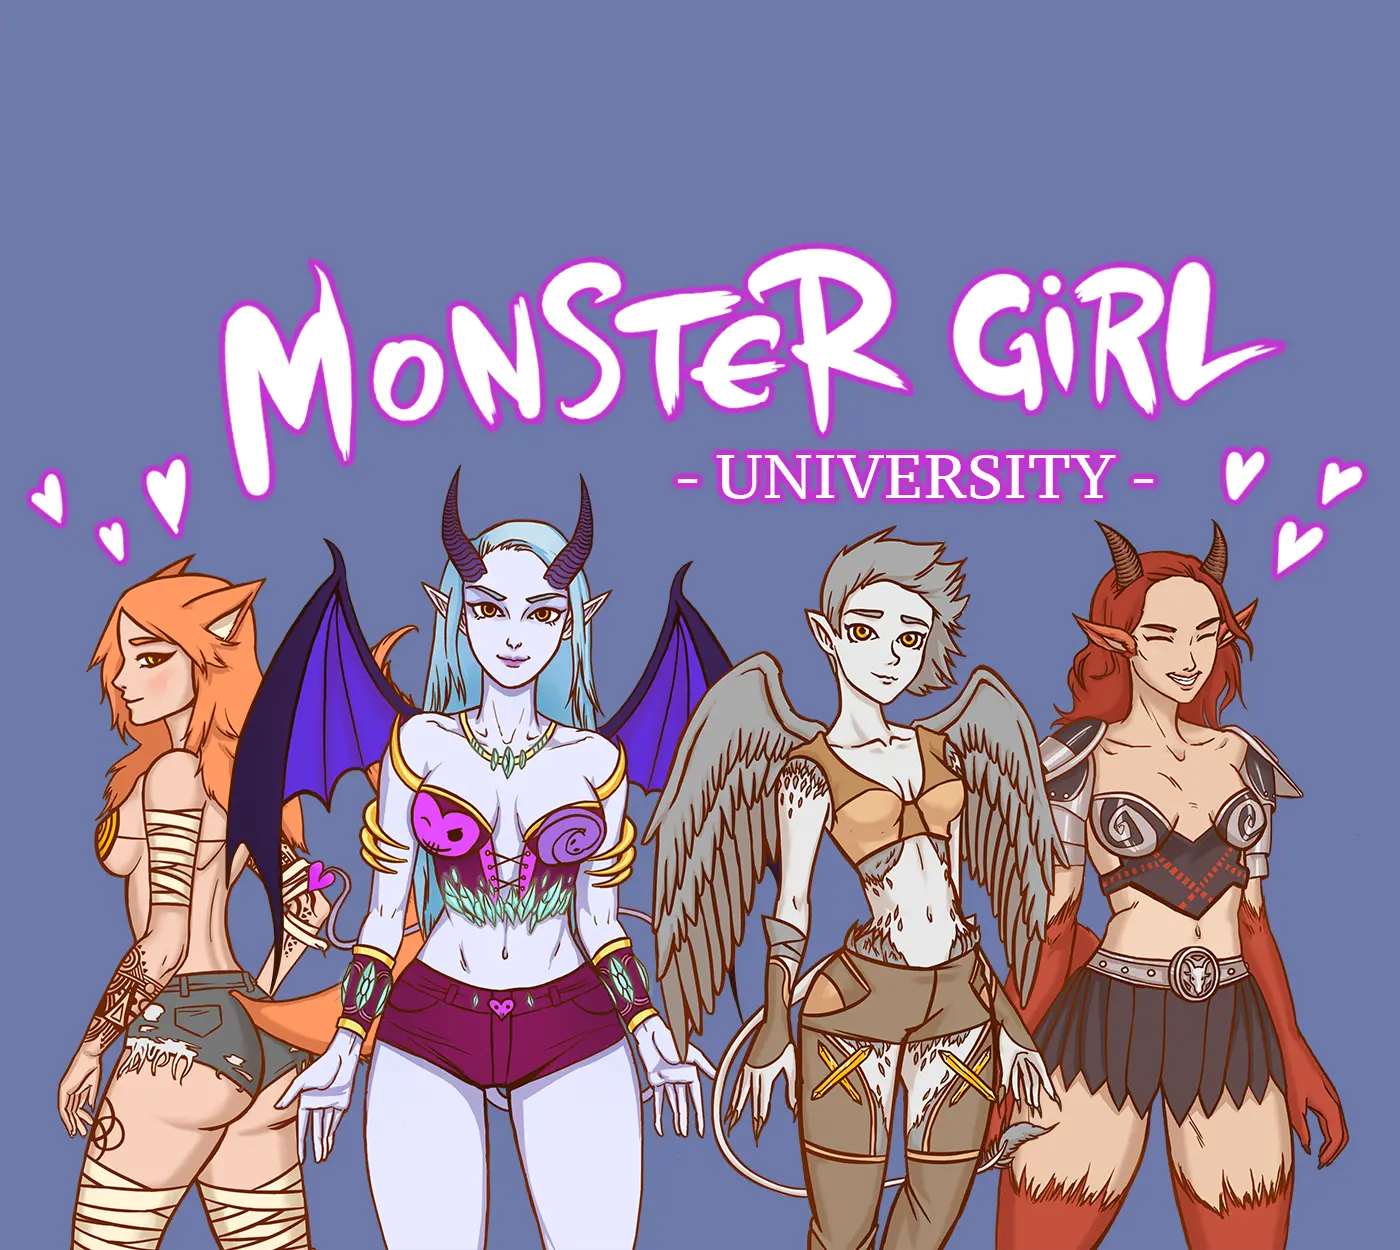 Monster Girl University main image